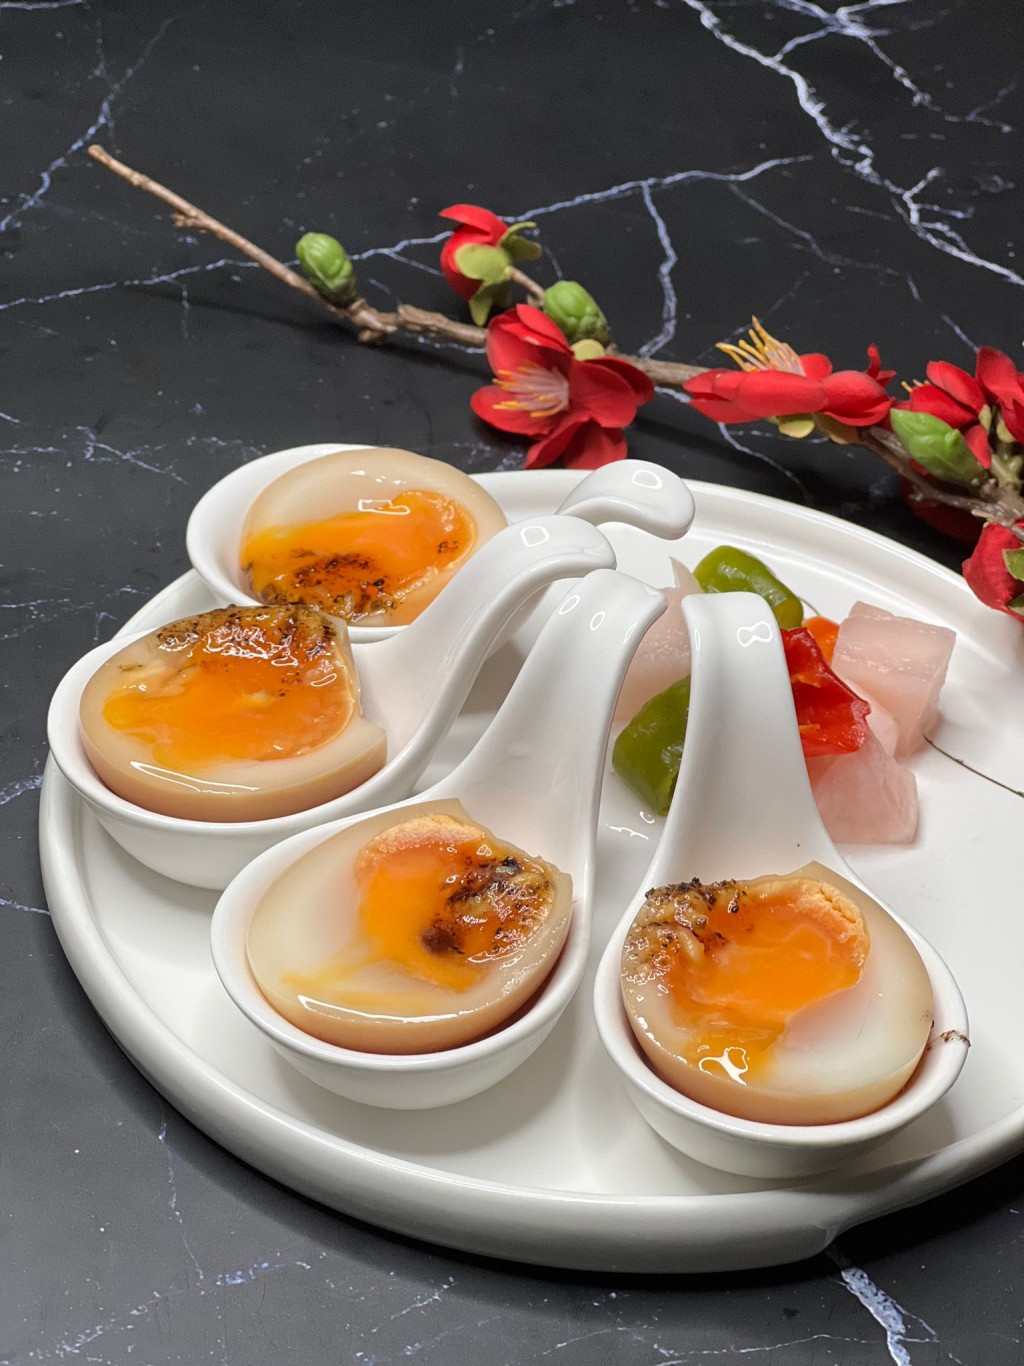 黑松露蜂蜜溏心蛋（價值 HK$38），優惠期間，可$1追加。